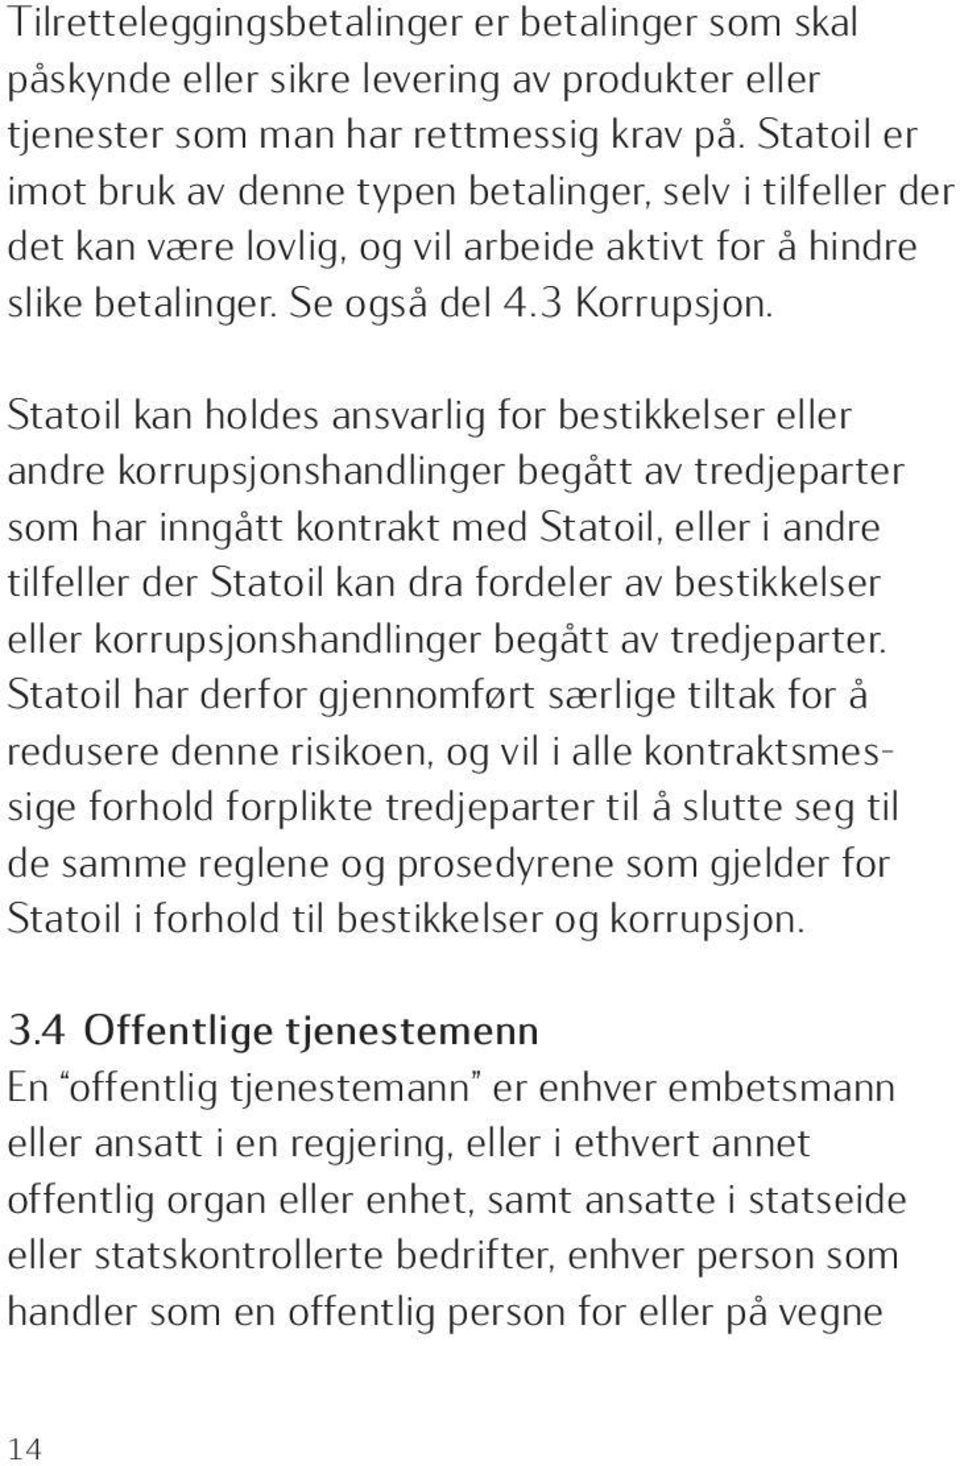 Statoil kan holdes ansvarlig for bestikkelser eller andre korrupsjonshandlinger begått av tredjeparter som har inngått kontrakt med Statoil, eller i andre tilfeller der Statoil kan dra fordeler av